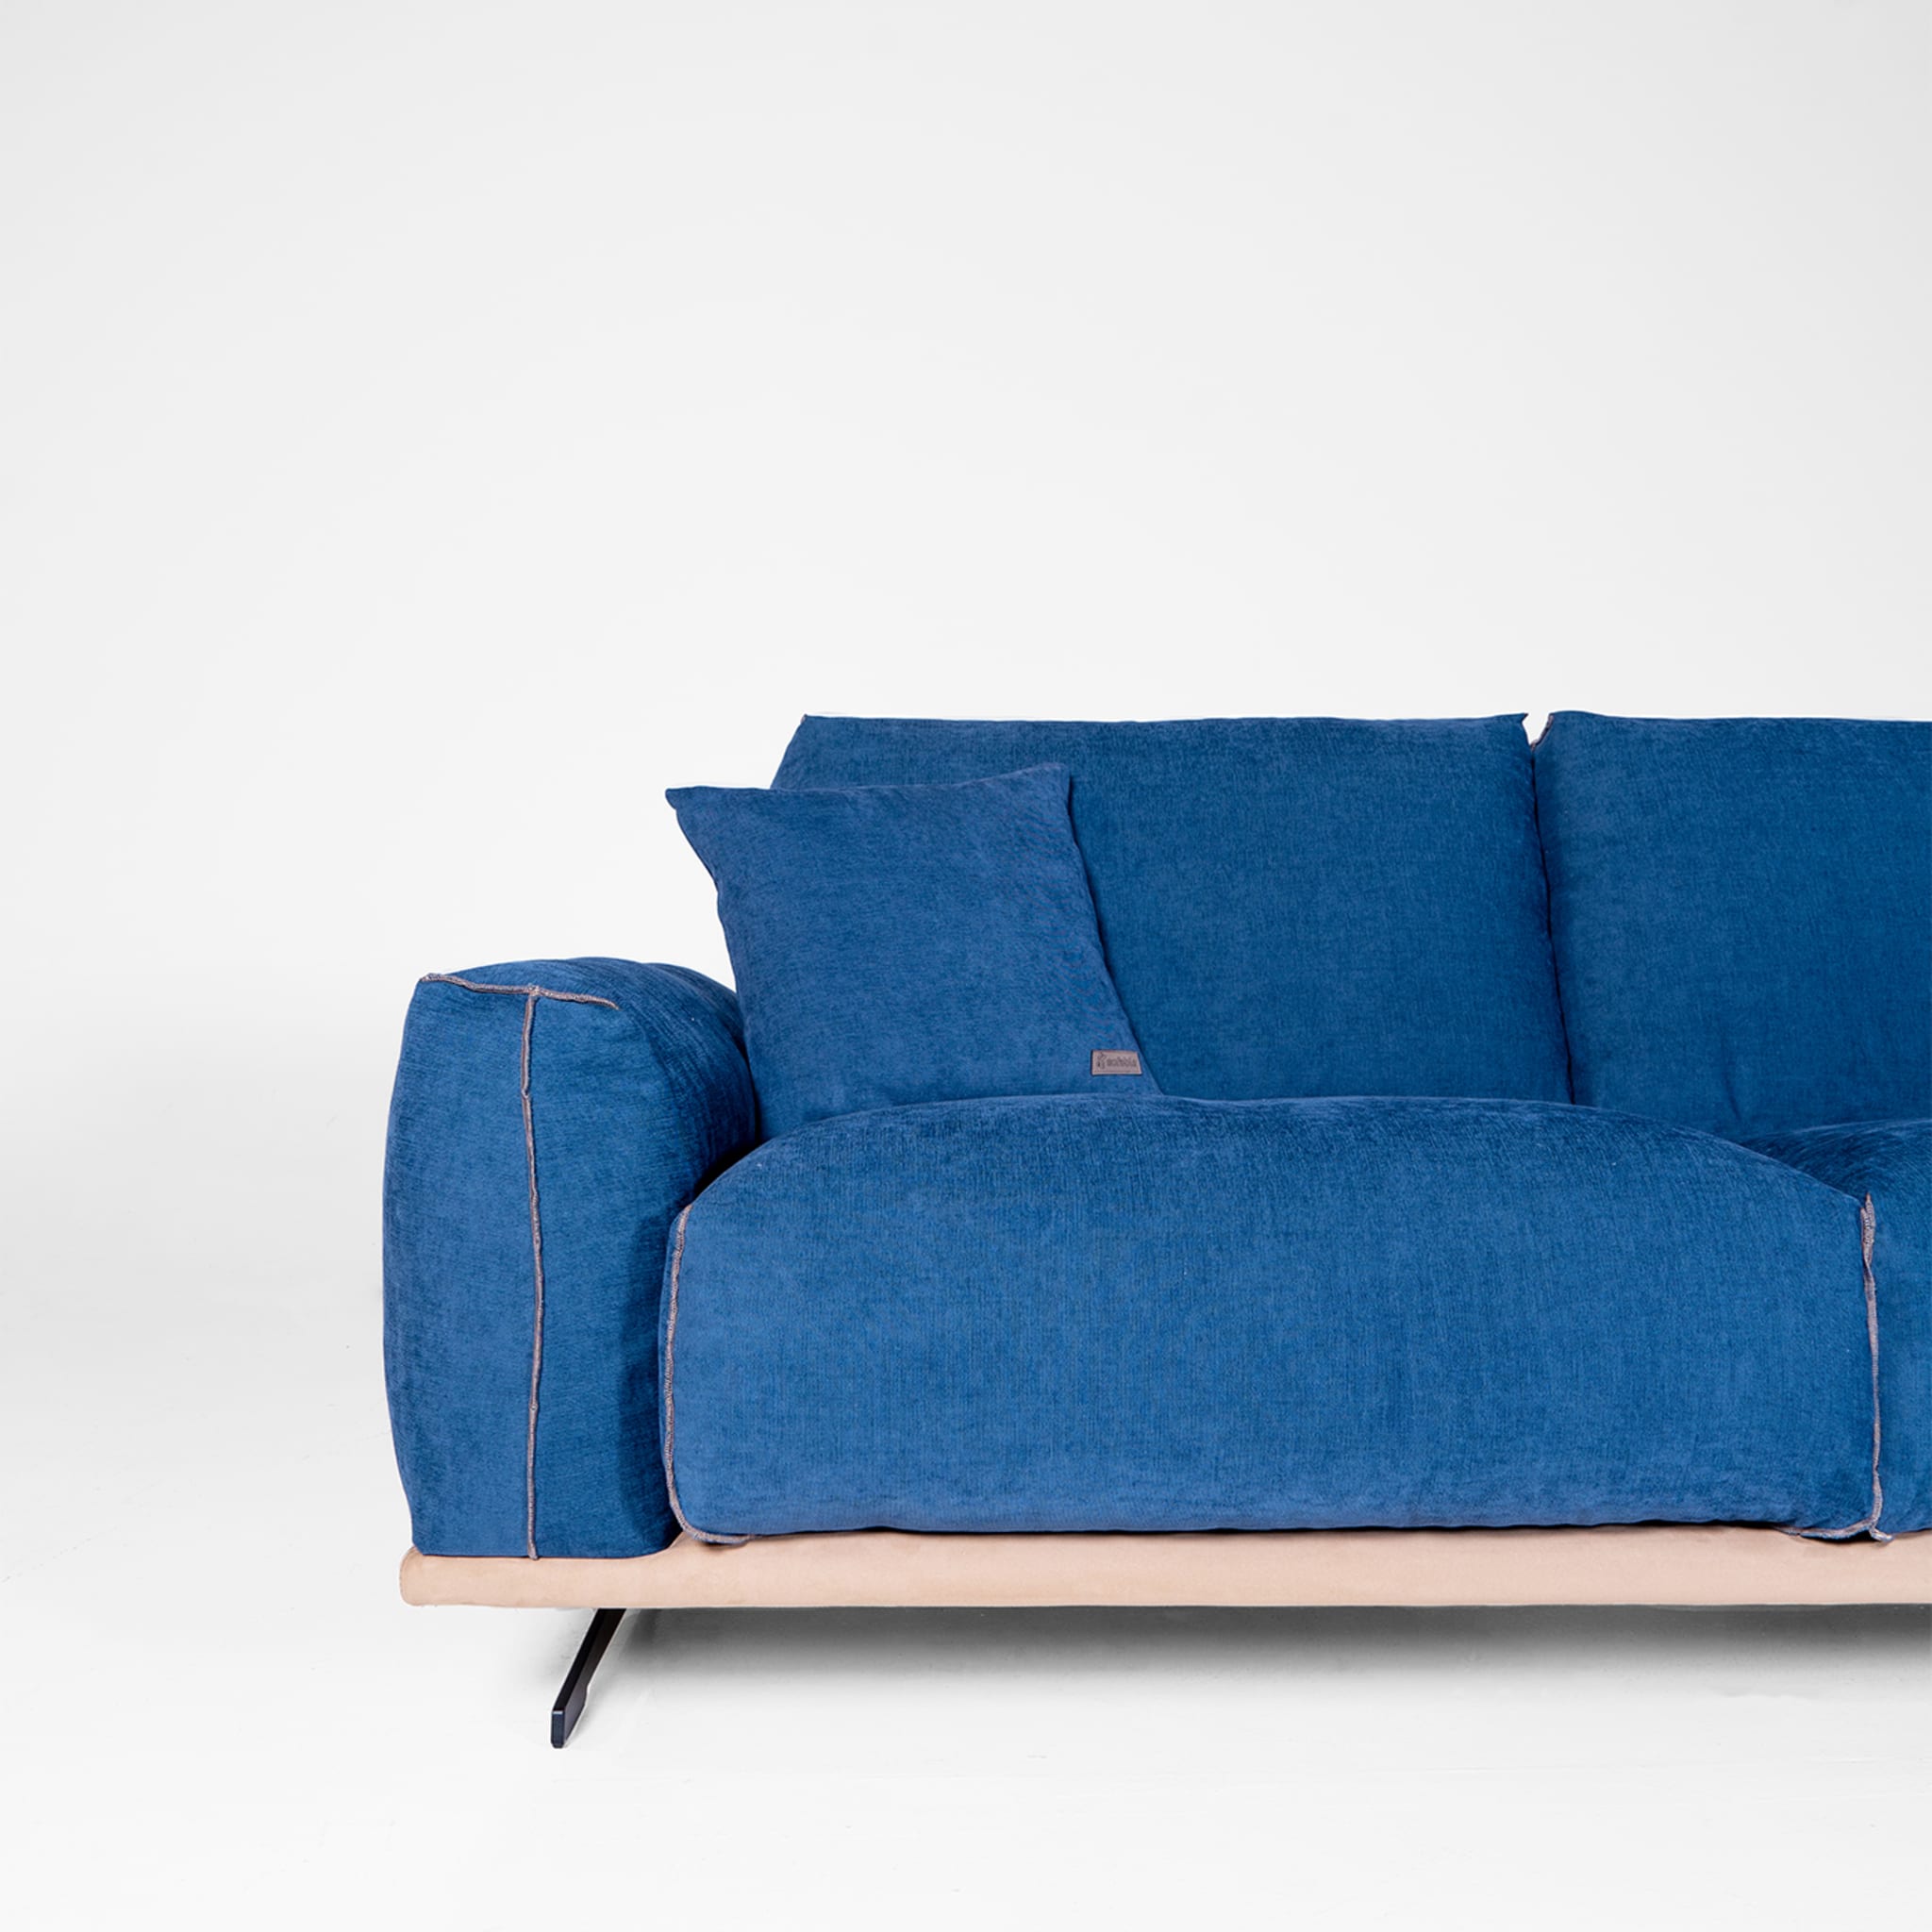 Boboli Blue 2-Seater Sofa by Marco & Giulio Mantellassi  - Alternative view 2